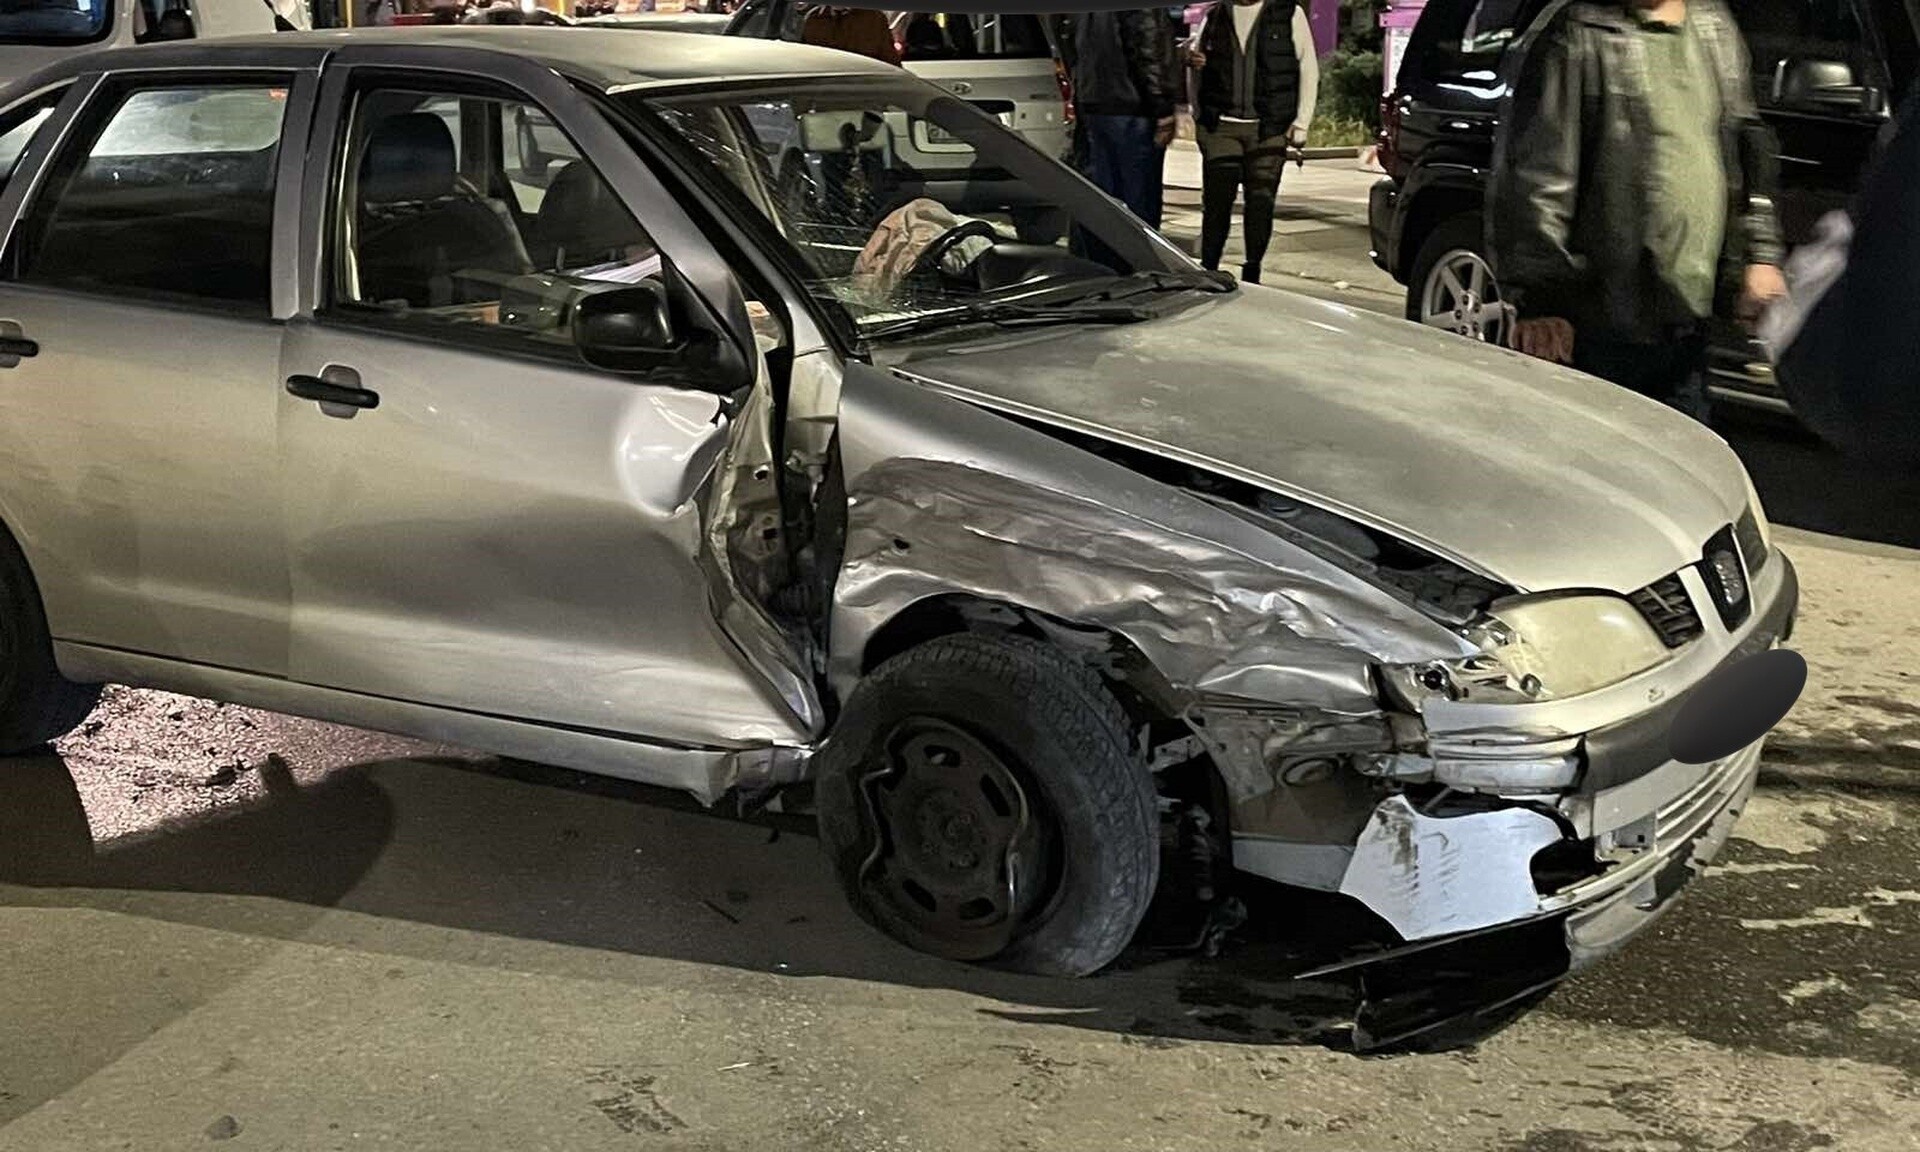 Λάρισα: Αυτοκίνητο παρέσυρε και τραυμάτισε ανήλικο αφού προσέκρουσε σε άλλα οχήματα